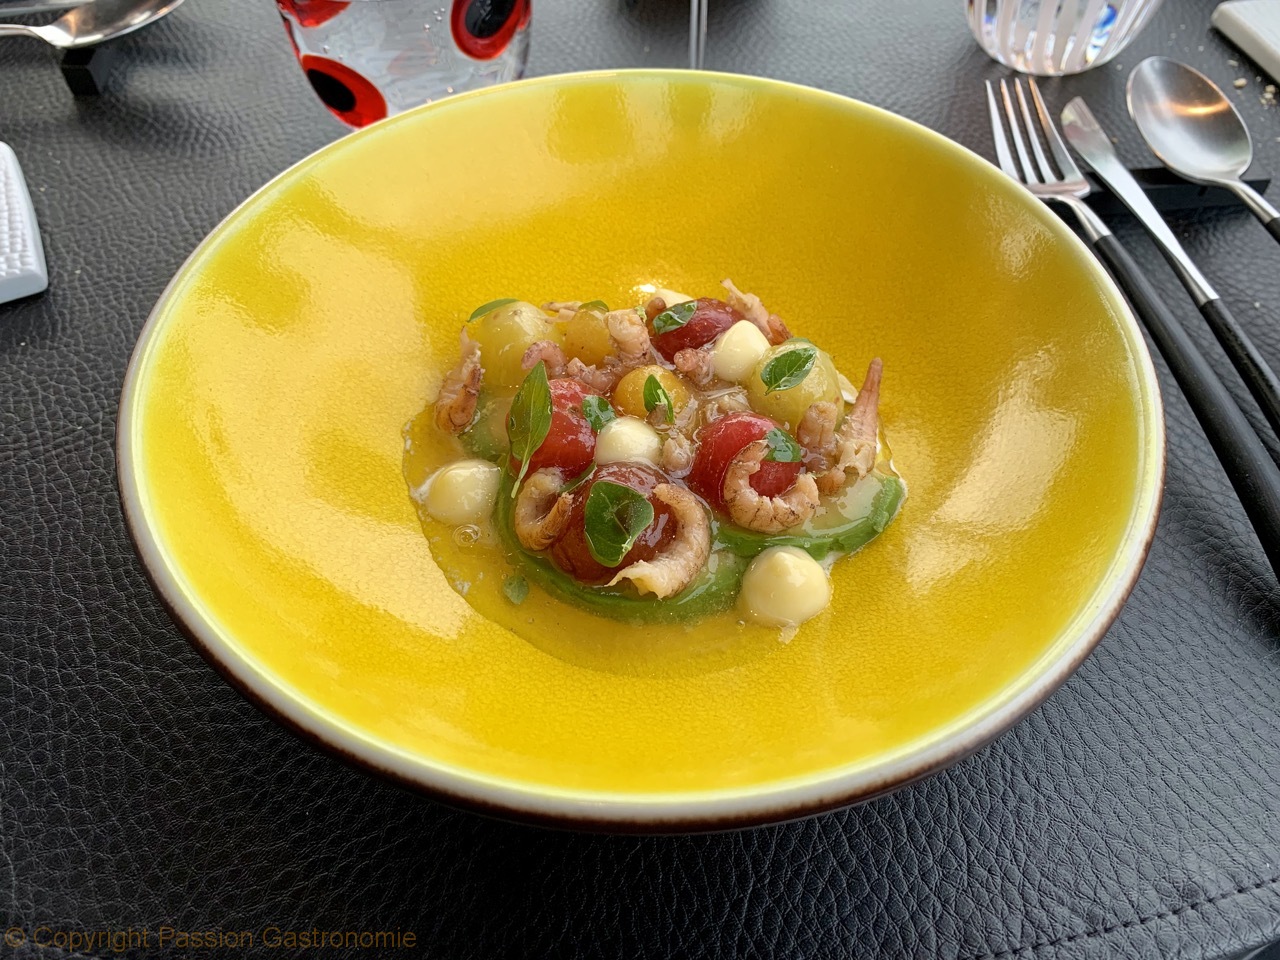 Restaurant La Villa In The Sky - Tomate cerise, crevettes grises, burrata, kéfir limes